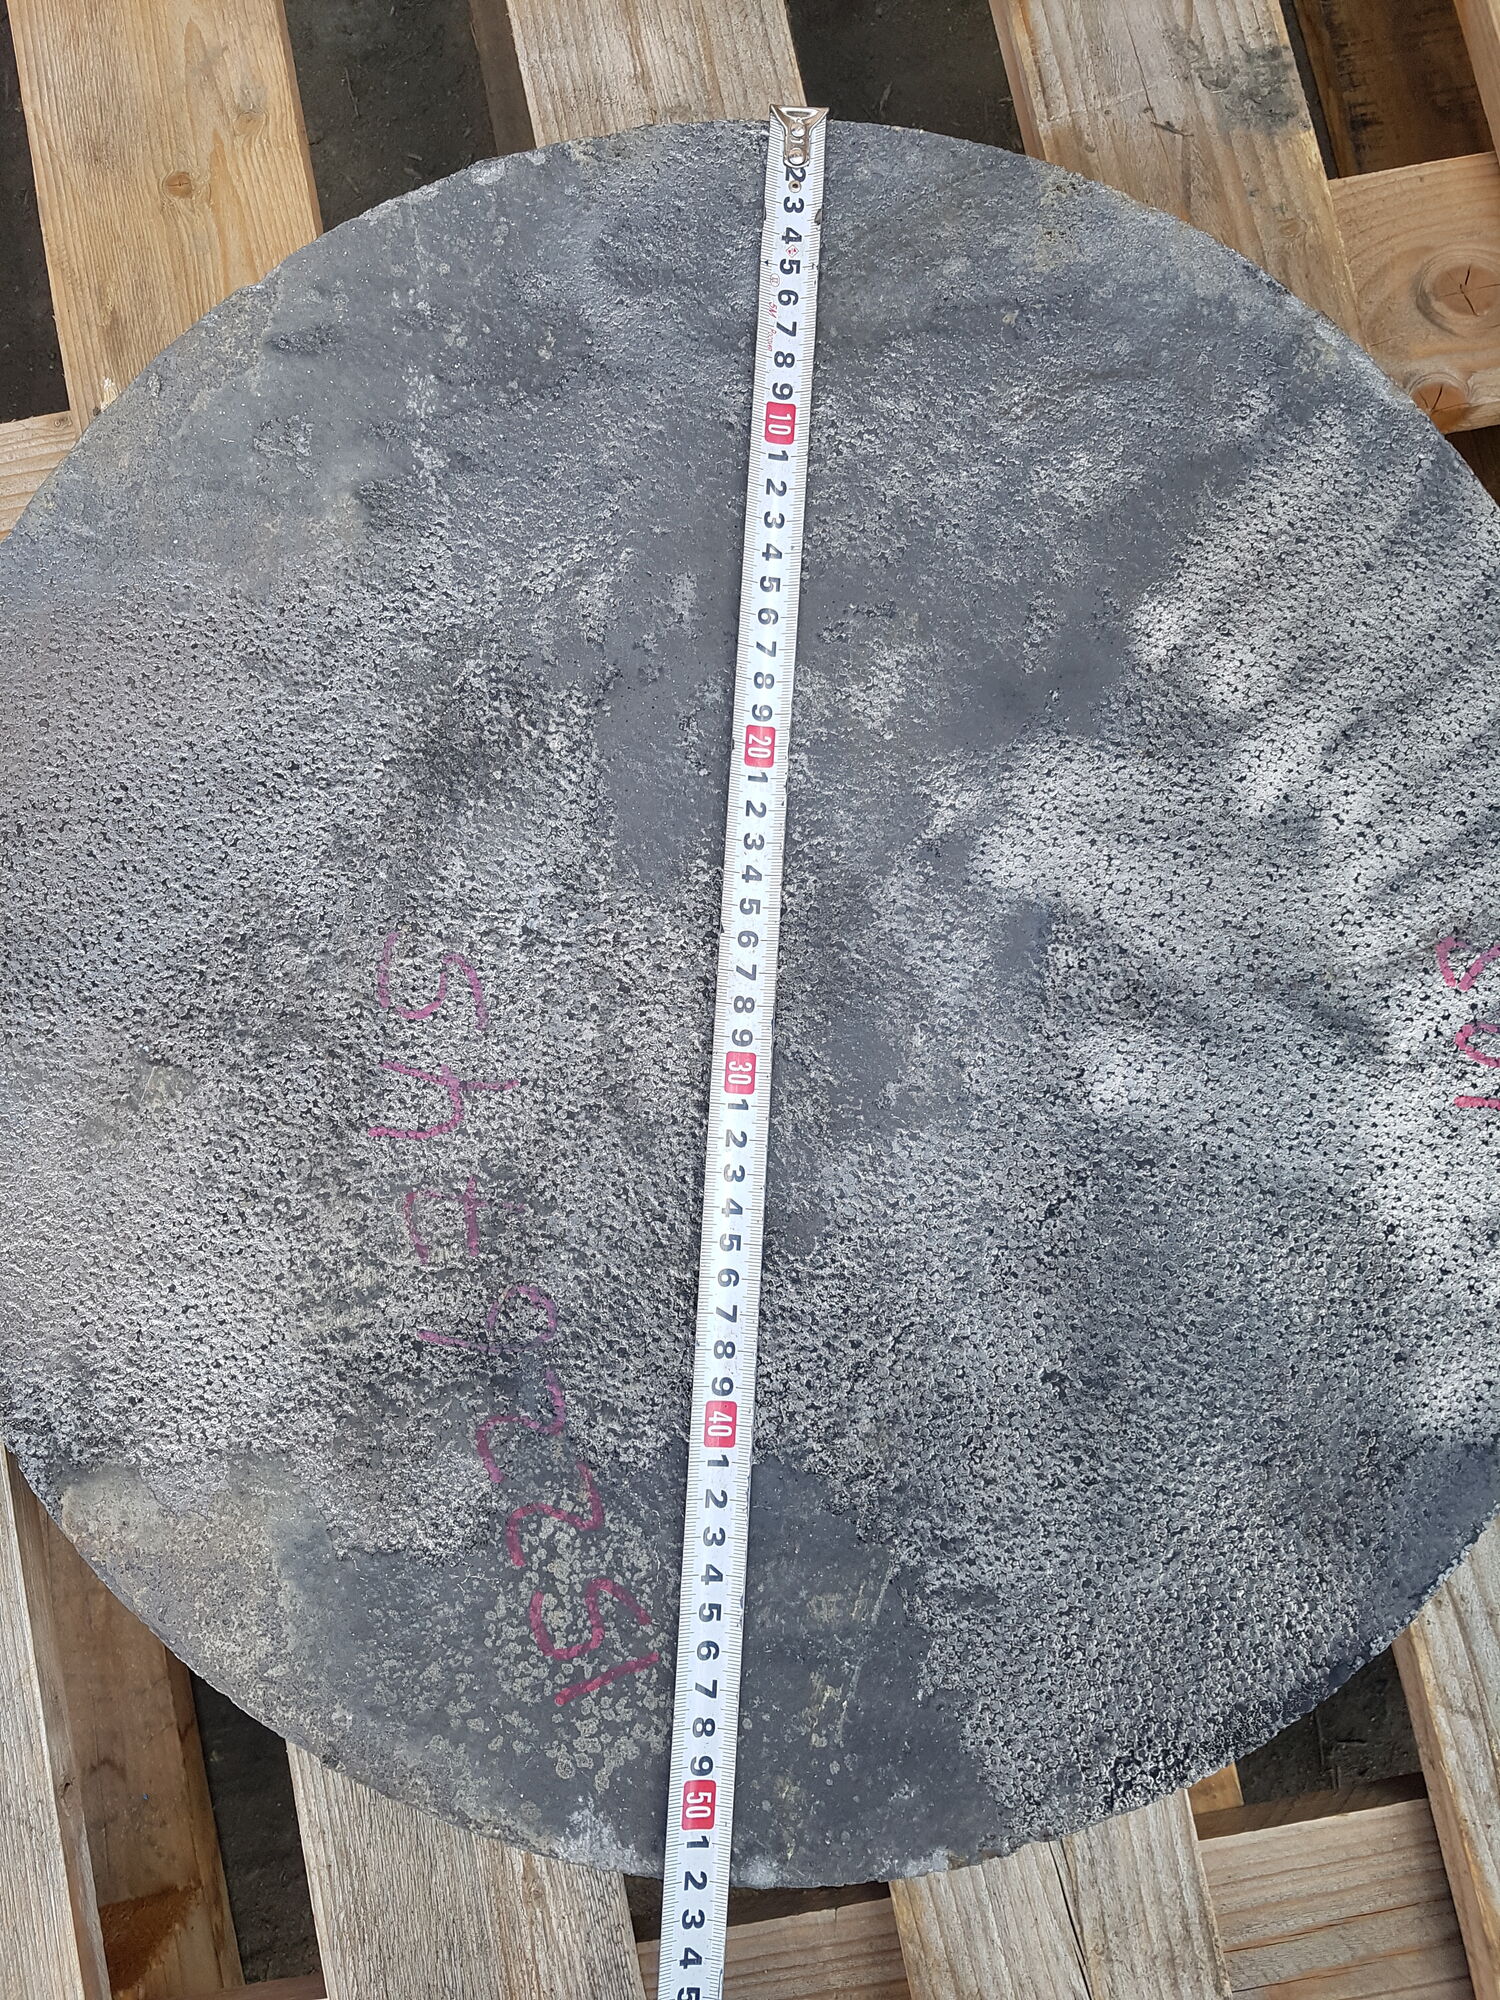 Отливка диска ф500мм из чугуна